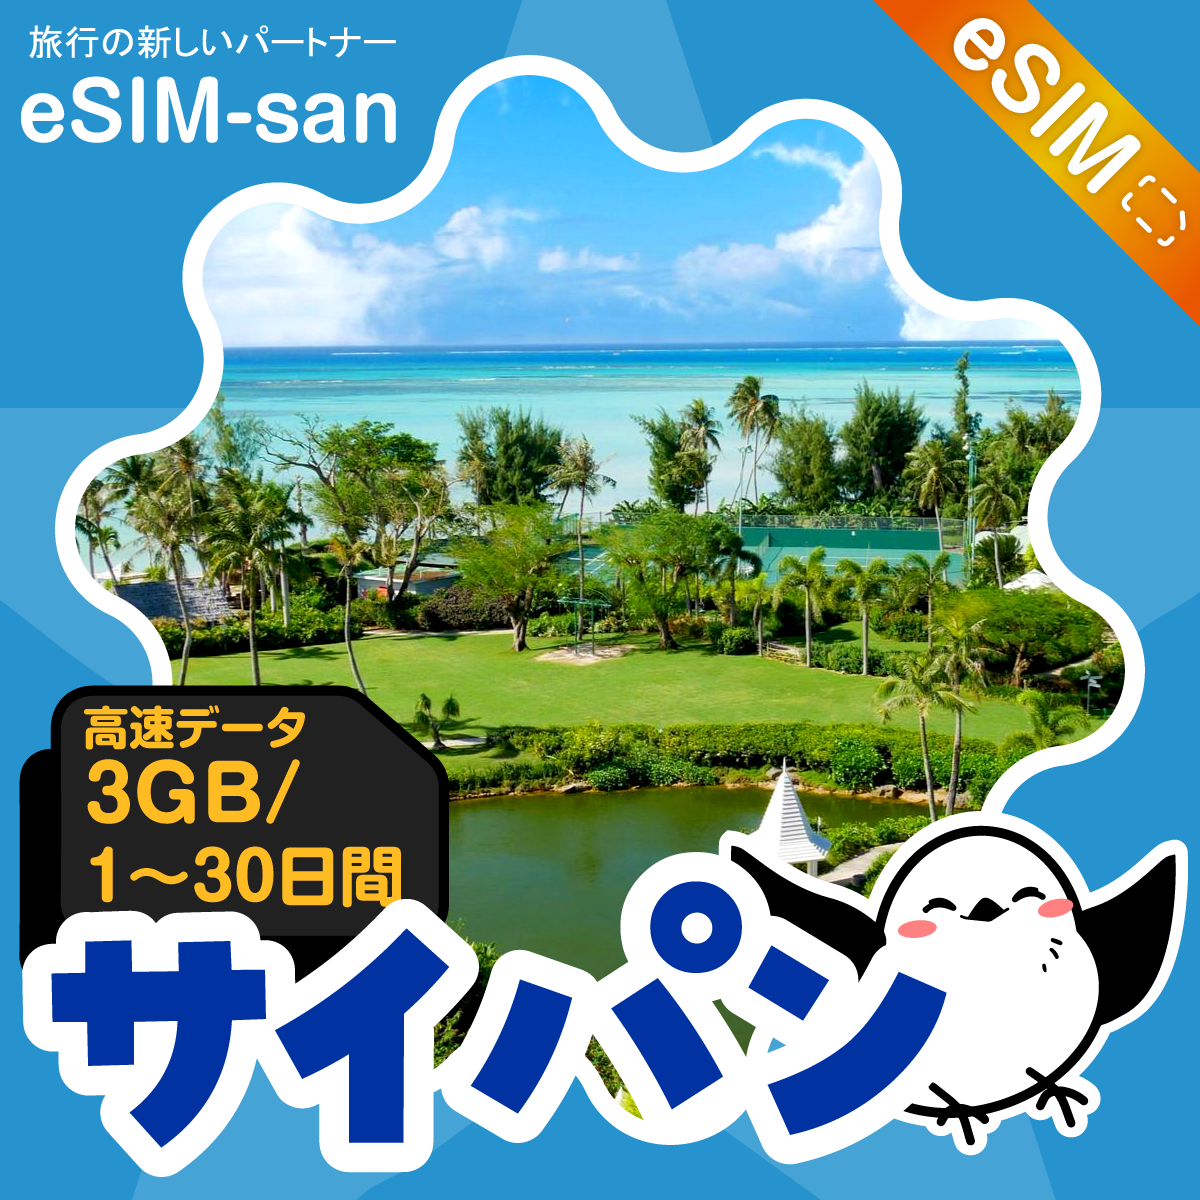 サイパンeSIMの3GB/dayプラン画像_eSIM-san